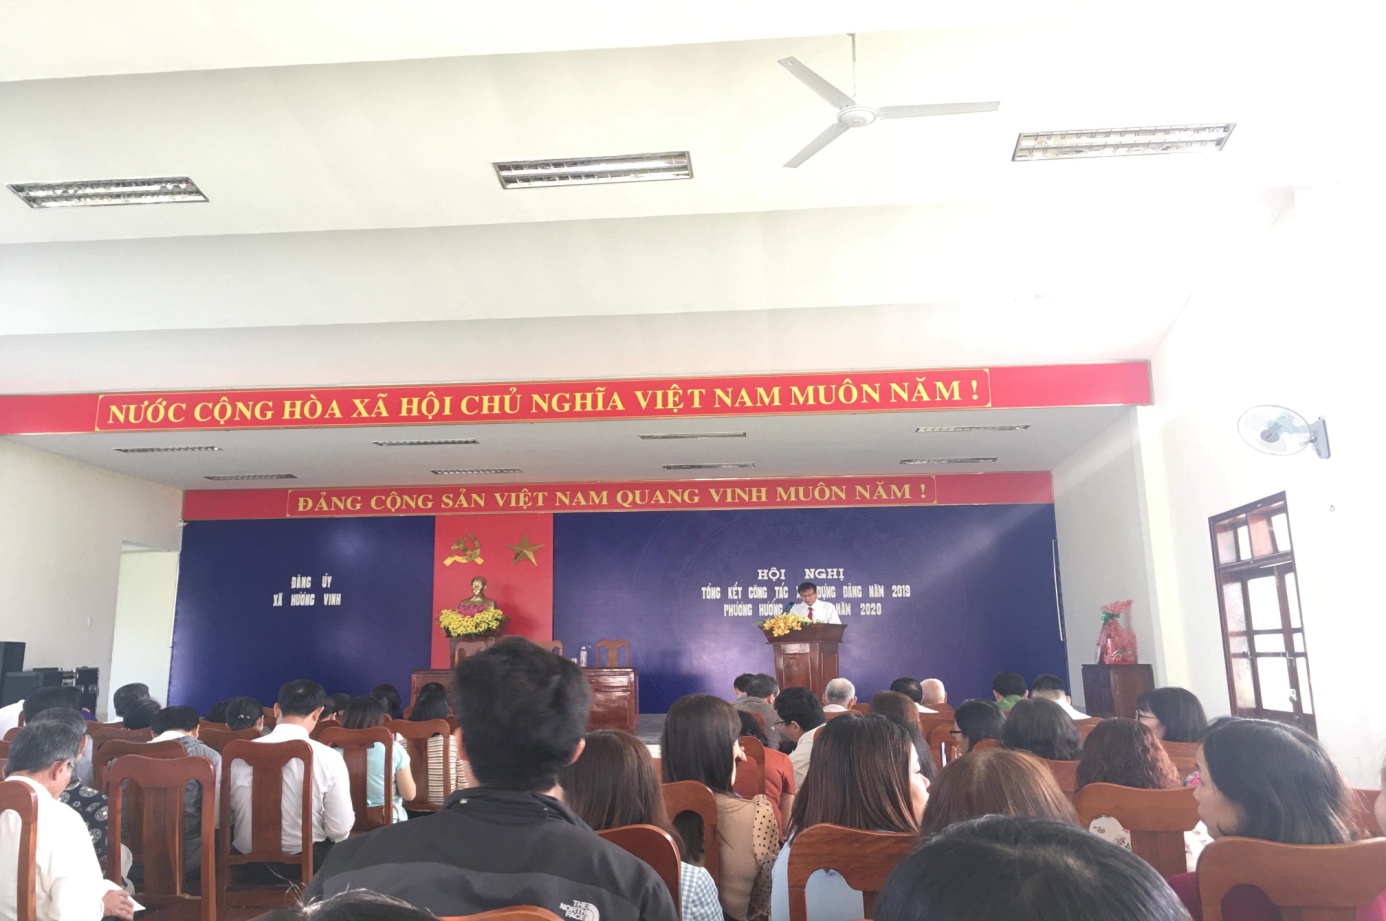 Đồng chí Nguyễn Văn Bổn – Chủ tịch HĐND xã, Bí thư Đảng ủy trình bày báo cáo tổng kết công tác xây dựng Đảng năm 2019, đề ra phương ướng, nhiệm vụ năm 2020.